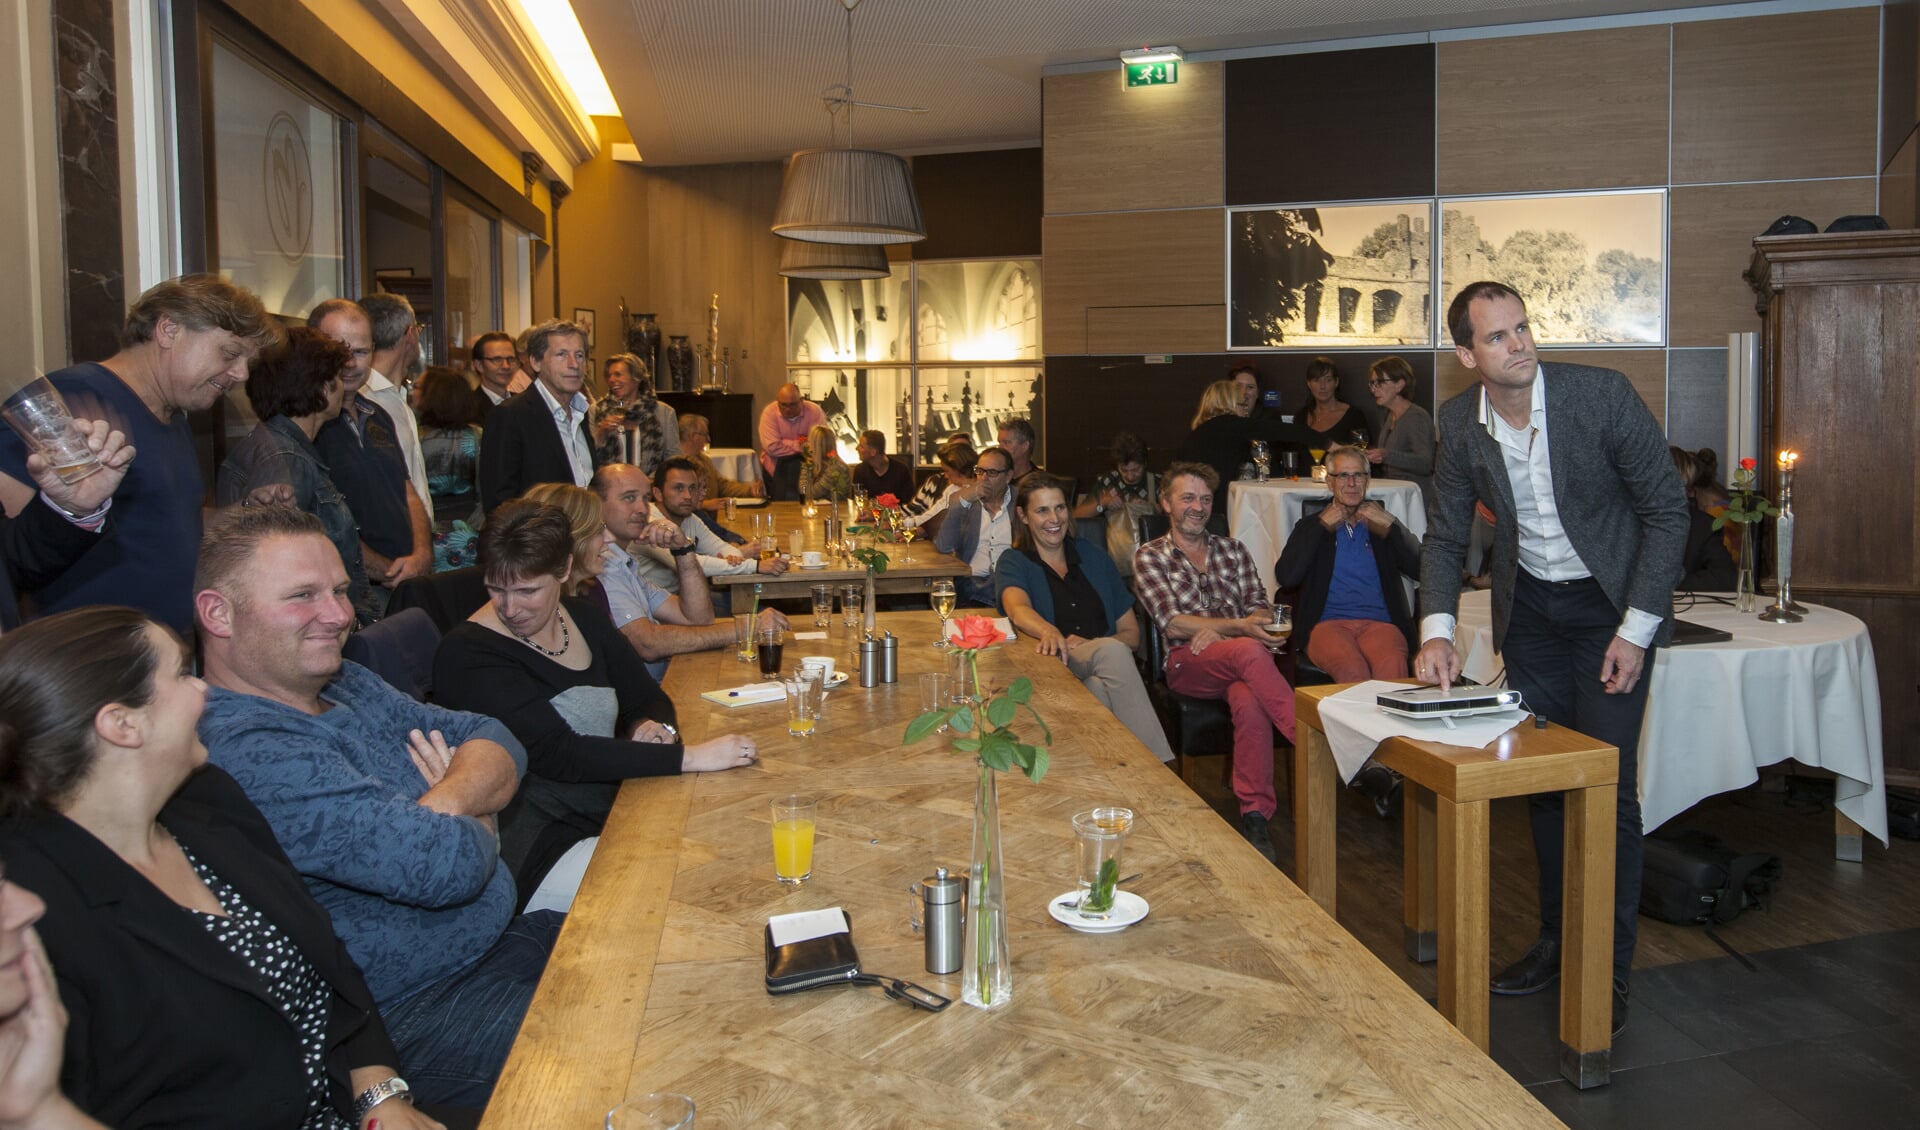 Vaak treedt tijdens het Ondernemerscafé een spreker op, zoals op deze foto Pieter van Andel van Factif die over online verkopen vertelde. Foto: Patrick van Gemert/Zutphens Persbureau